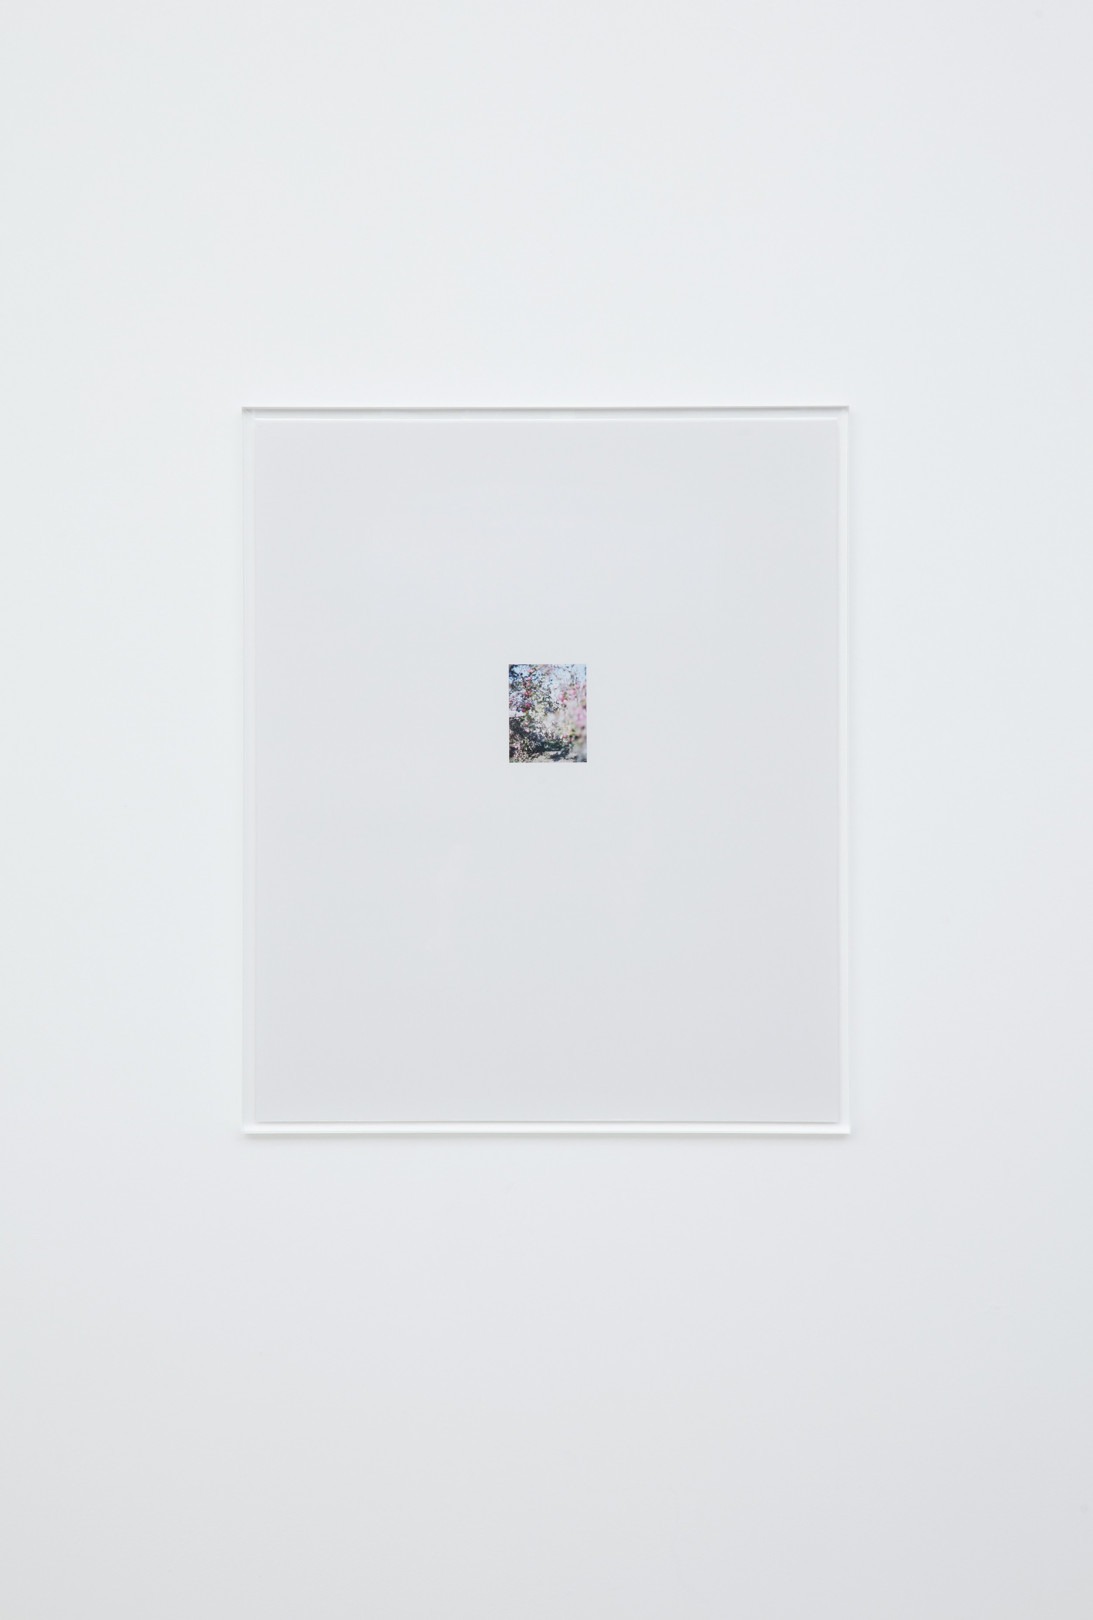 林檎の木 6 2017 c-print, acrylic frame 63.1 × 52.8 cm